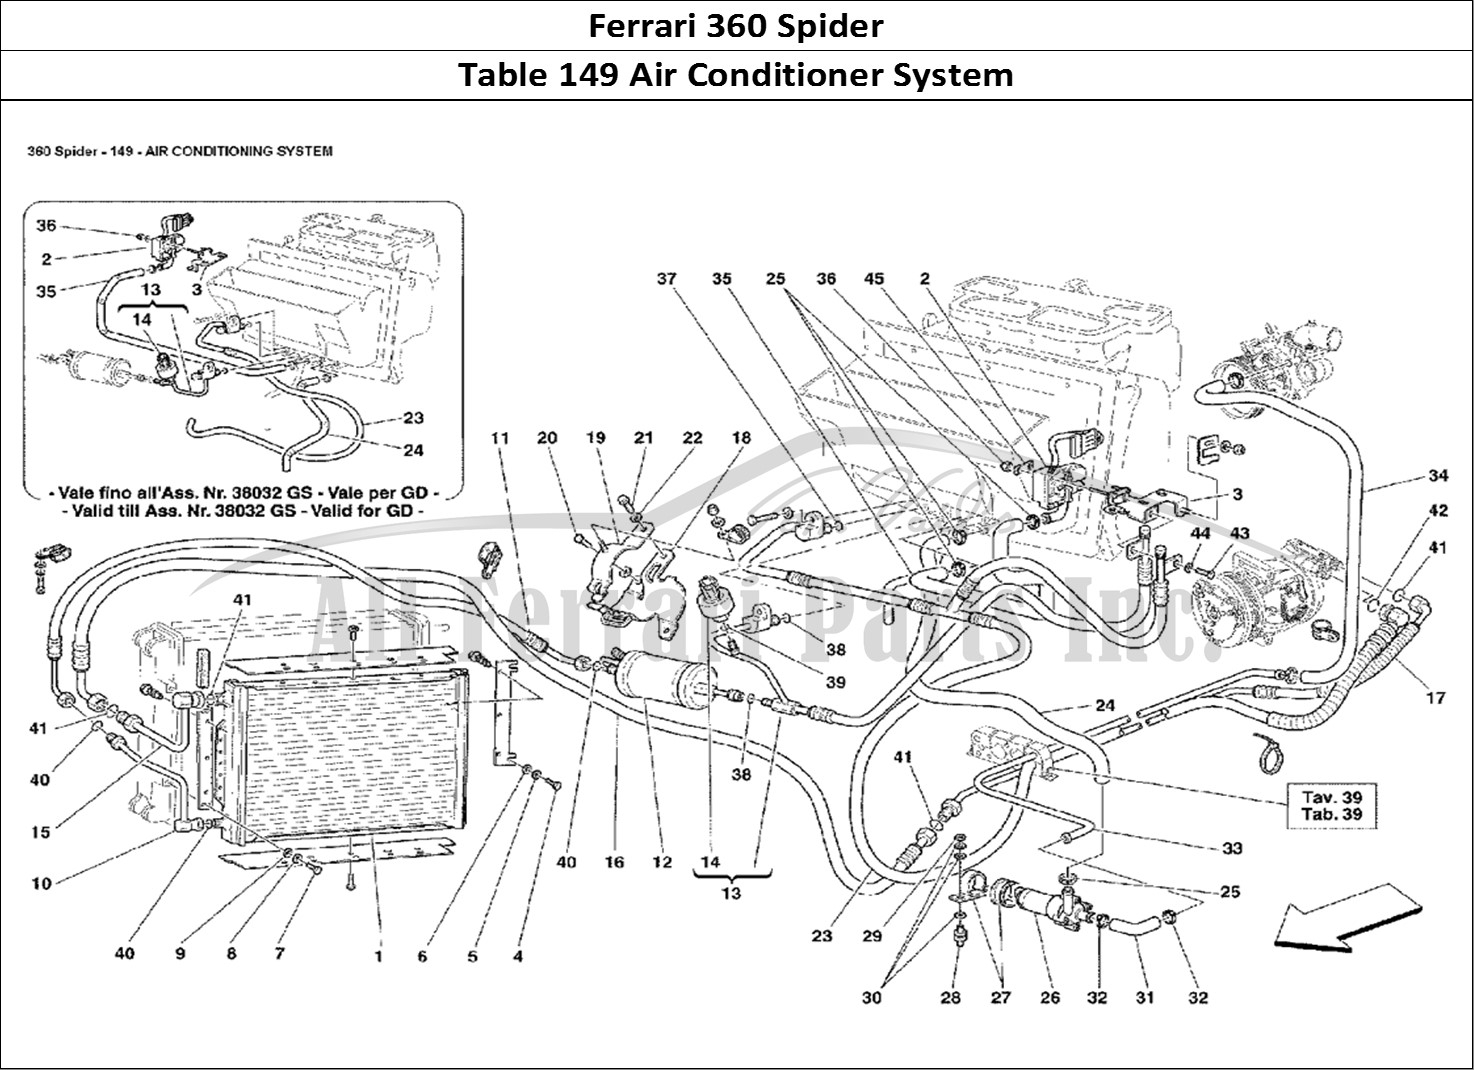 Ferrari Parts Ferrari 360 Spider Page 149 Air Conditioning System